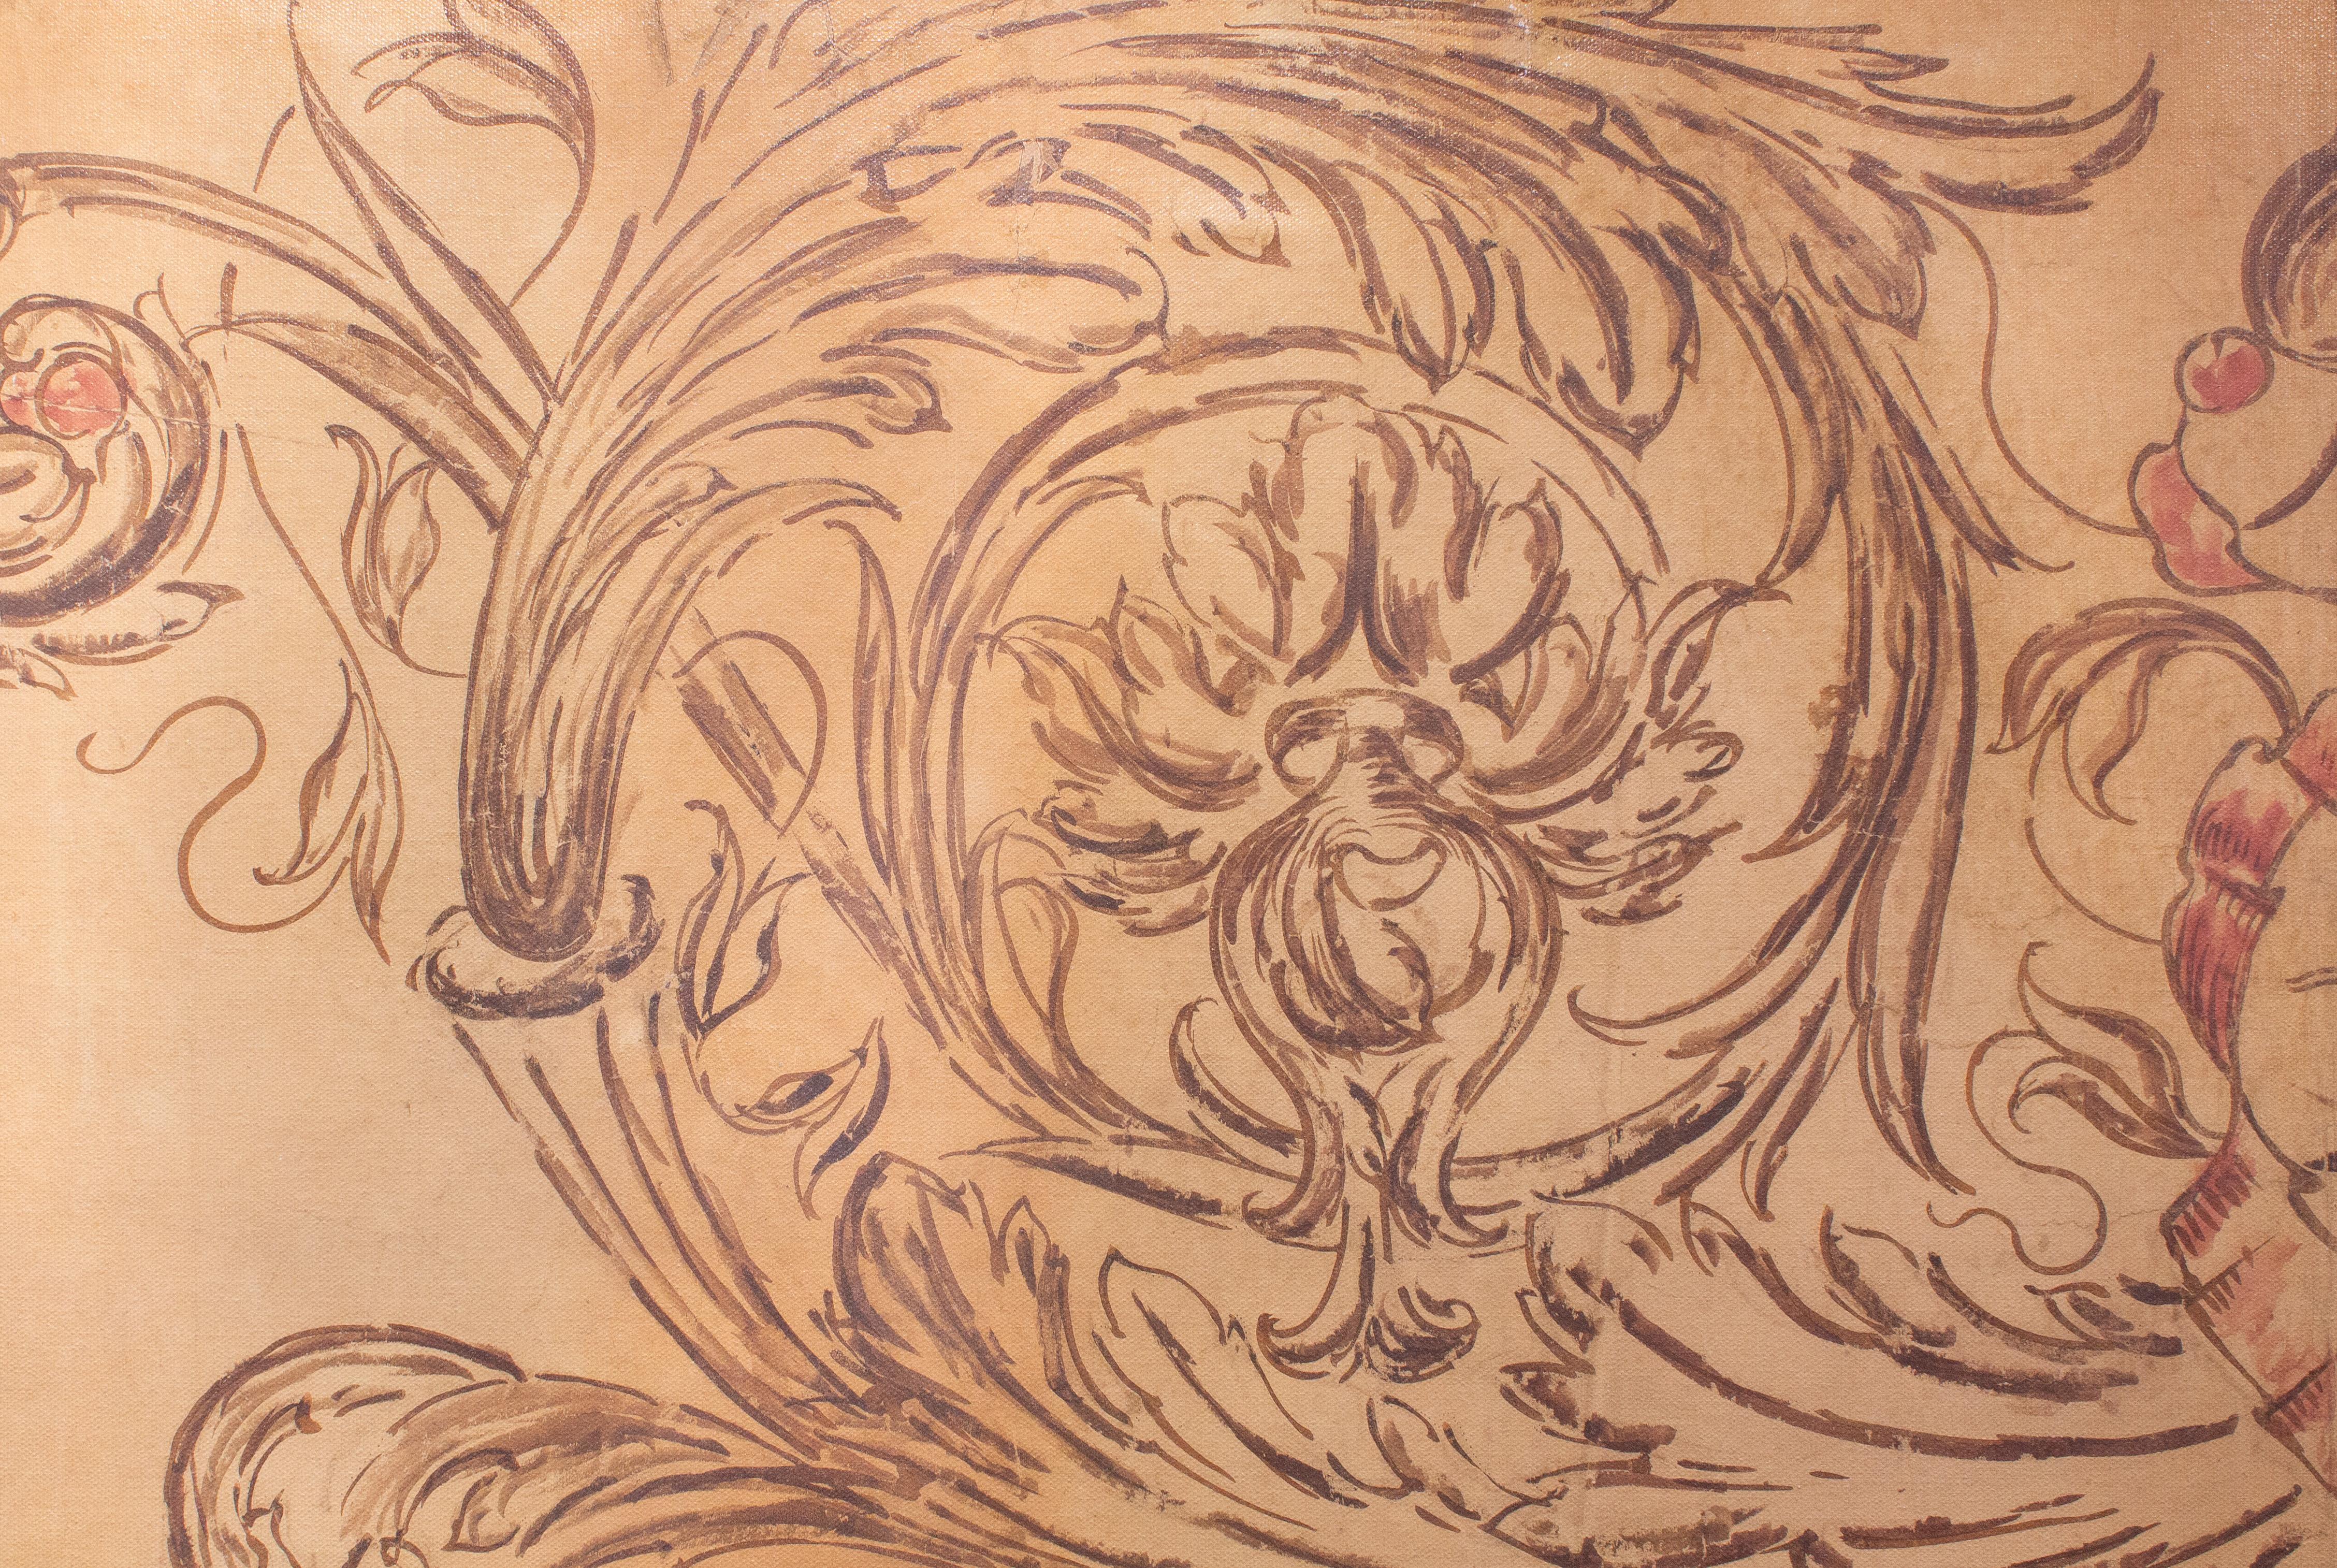 Motif de fresque spolvero italienne du XVIIIe siècle imprimé sur toile et encadré avec un cadre de moulure antique et des cristaux de citrine.

Le Spolvero est une méthode artistique qui consiste à transférer un dessin d'une impression sur la